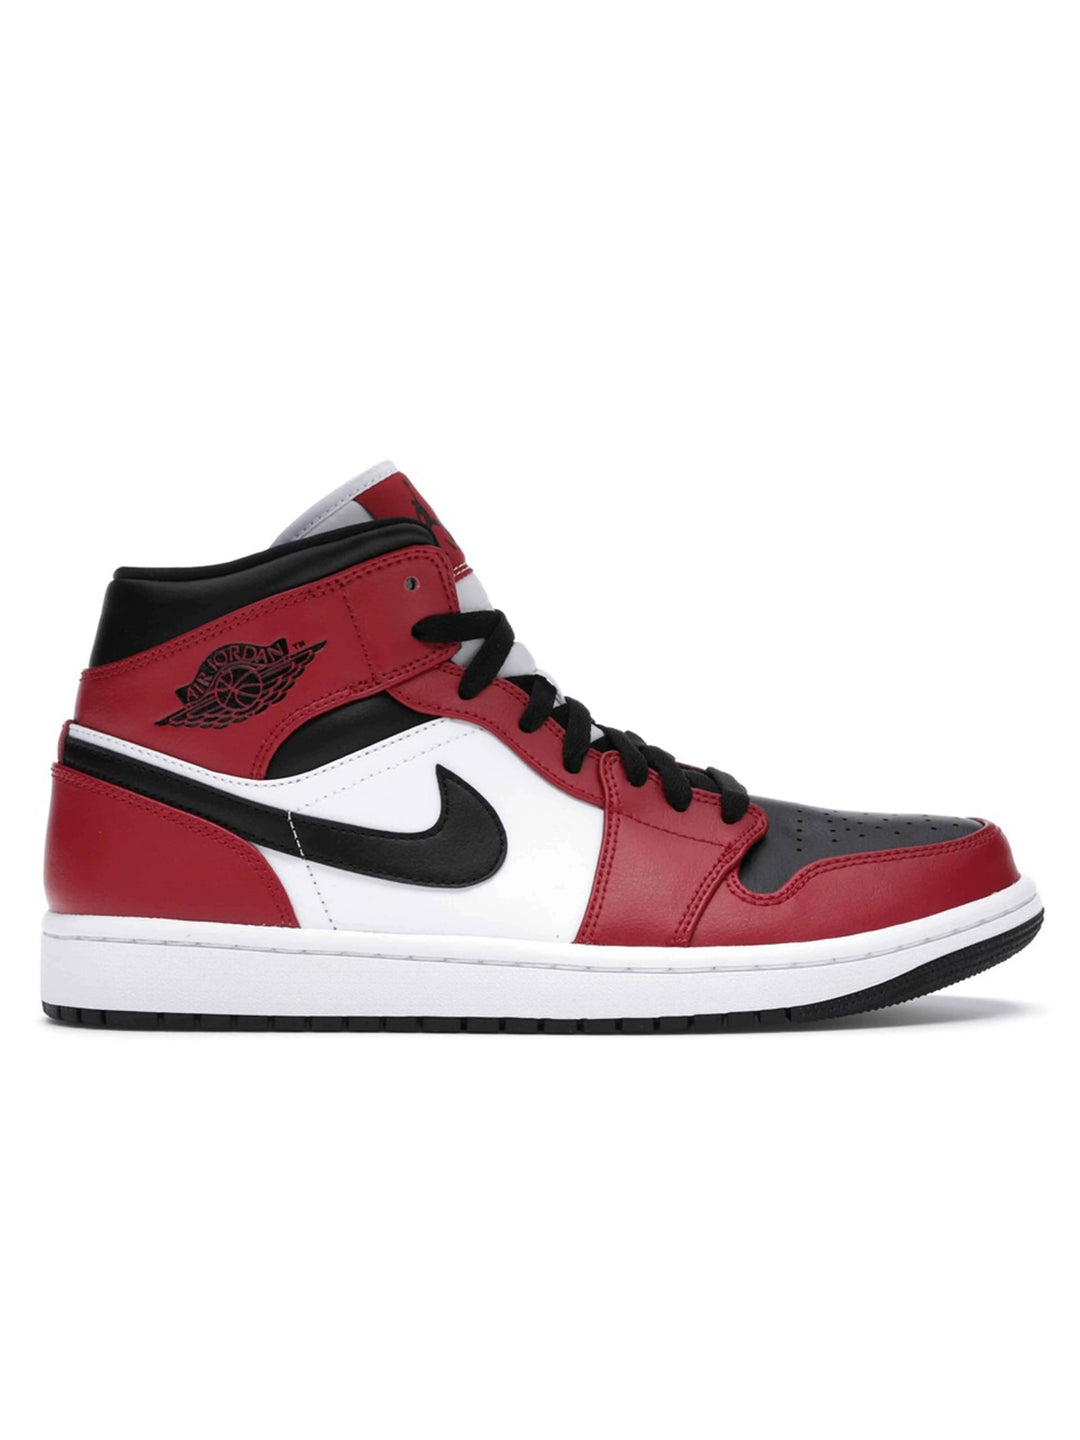 Nike Air Jordan 1 Mid Chicago Black Toe Jordan Brand